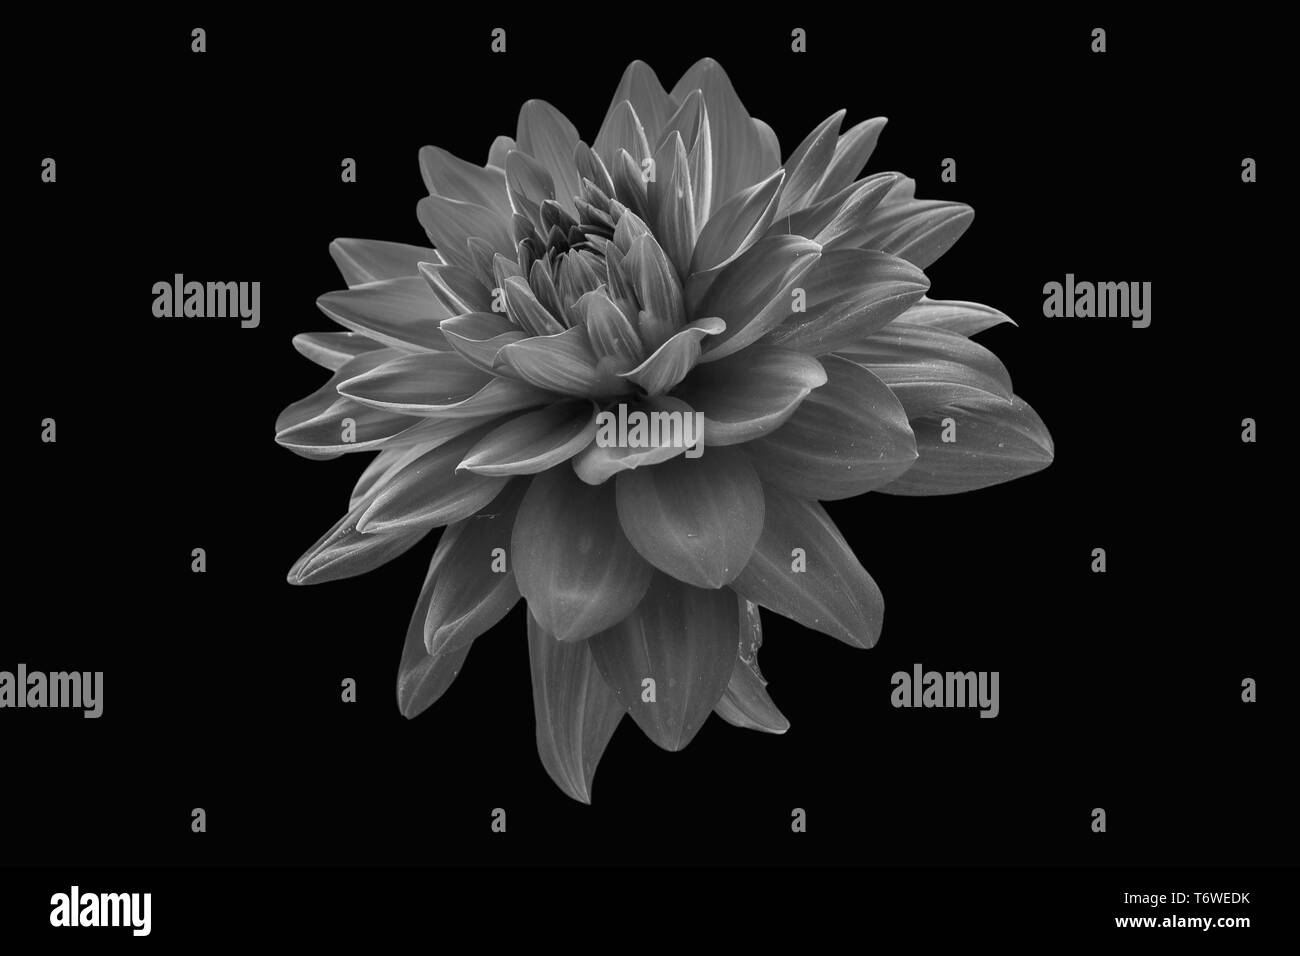 Jolie fleur blanche Banque d'images noir et blanc - Page 3 - Alamy